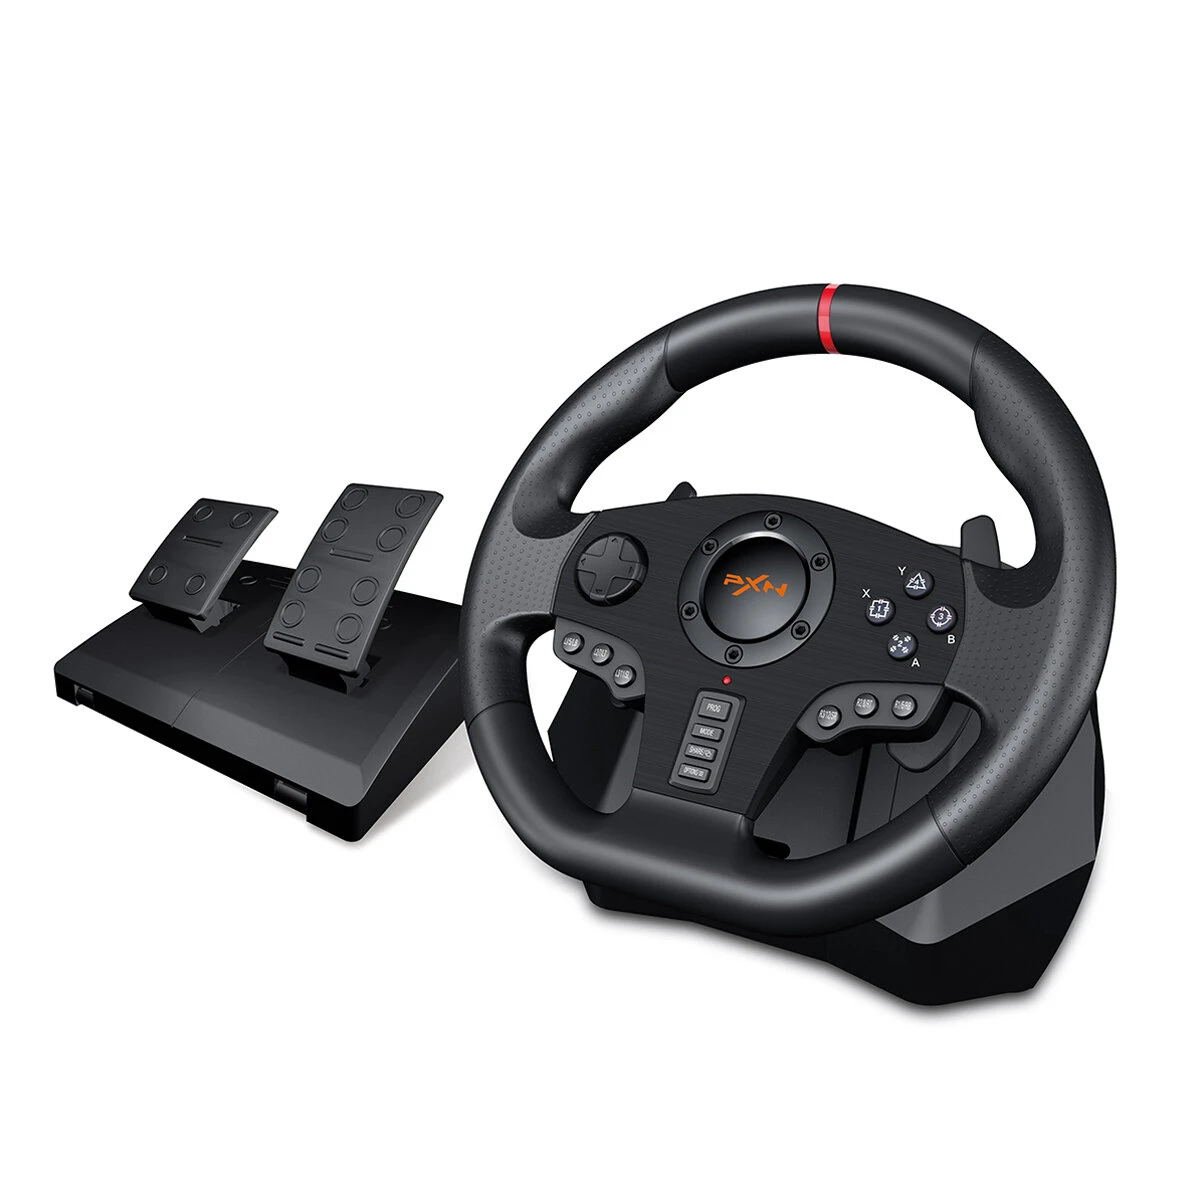 Στα 173,96€ από κινέζικη αποθήκη | PXN V900 Game Steering Wheel for PS3 NS Switch Gaming Controller for PC USB Vibration Dual Motor with Foldable Peda